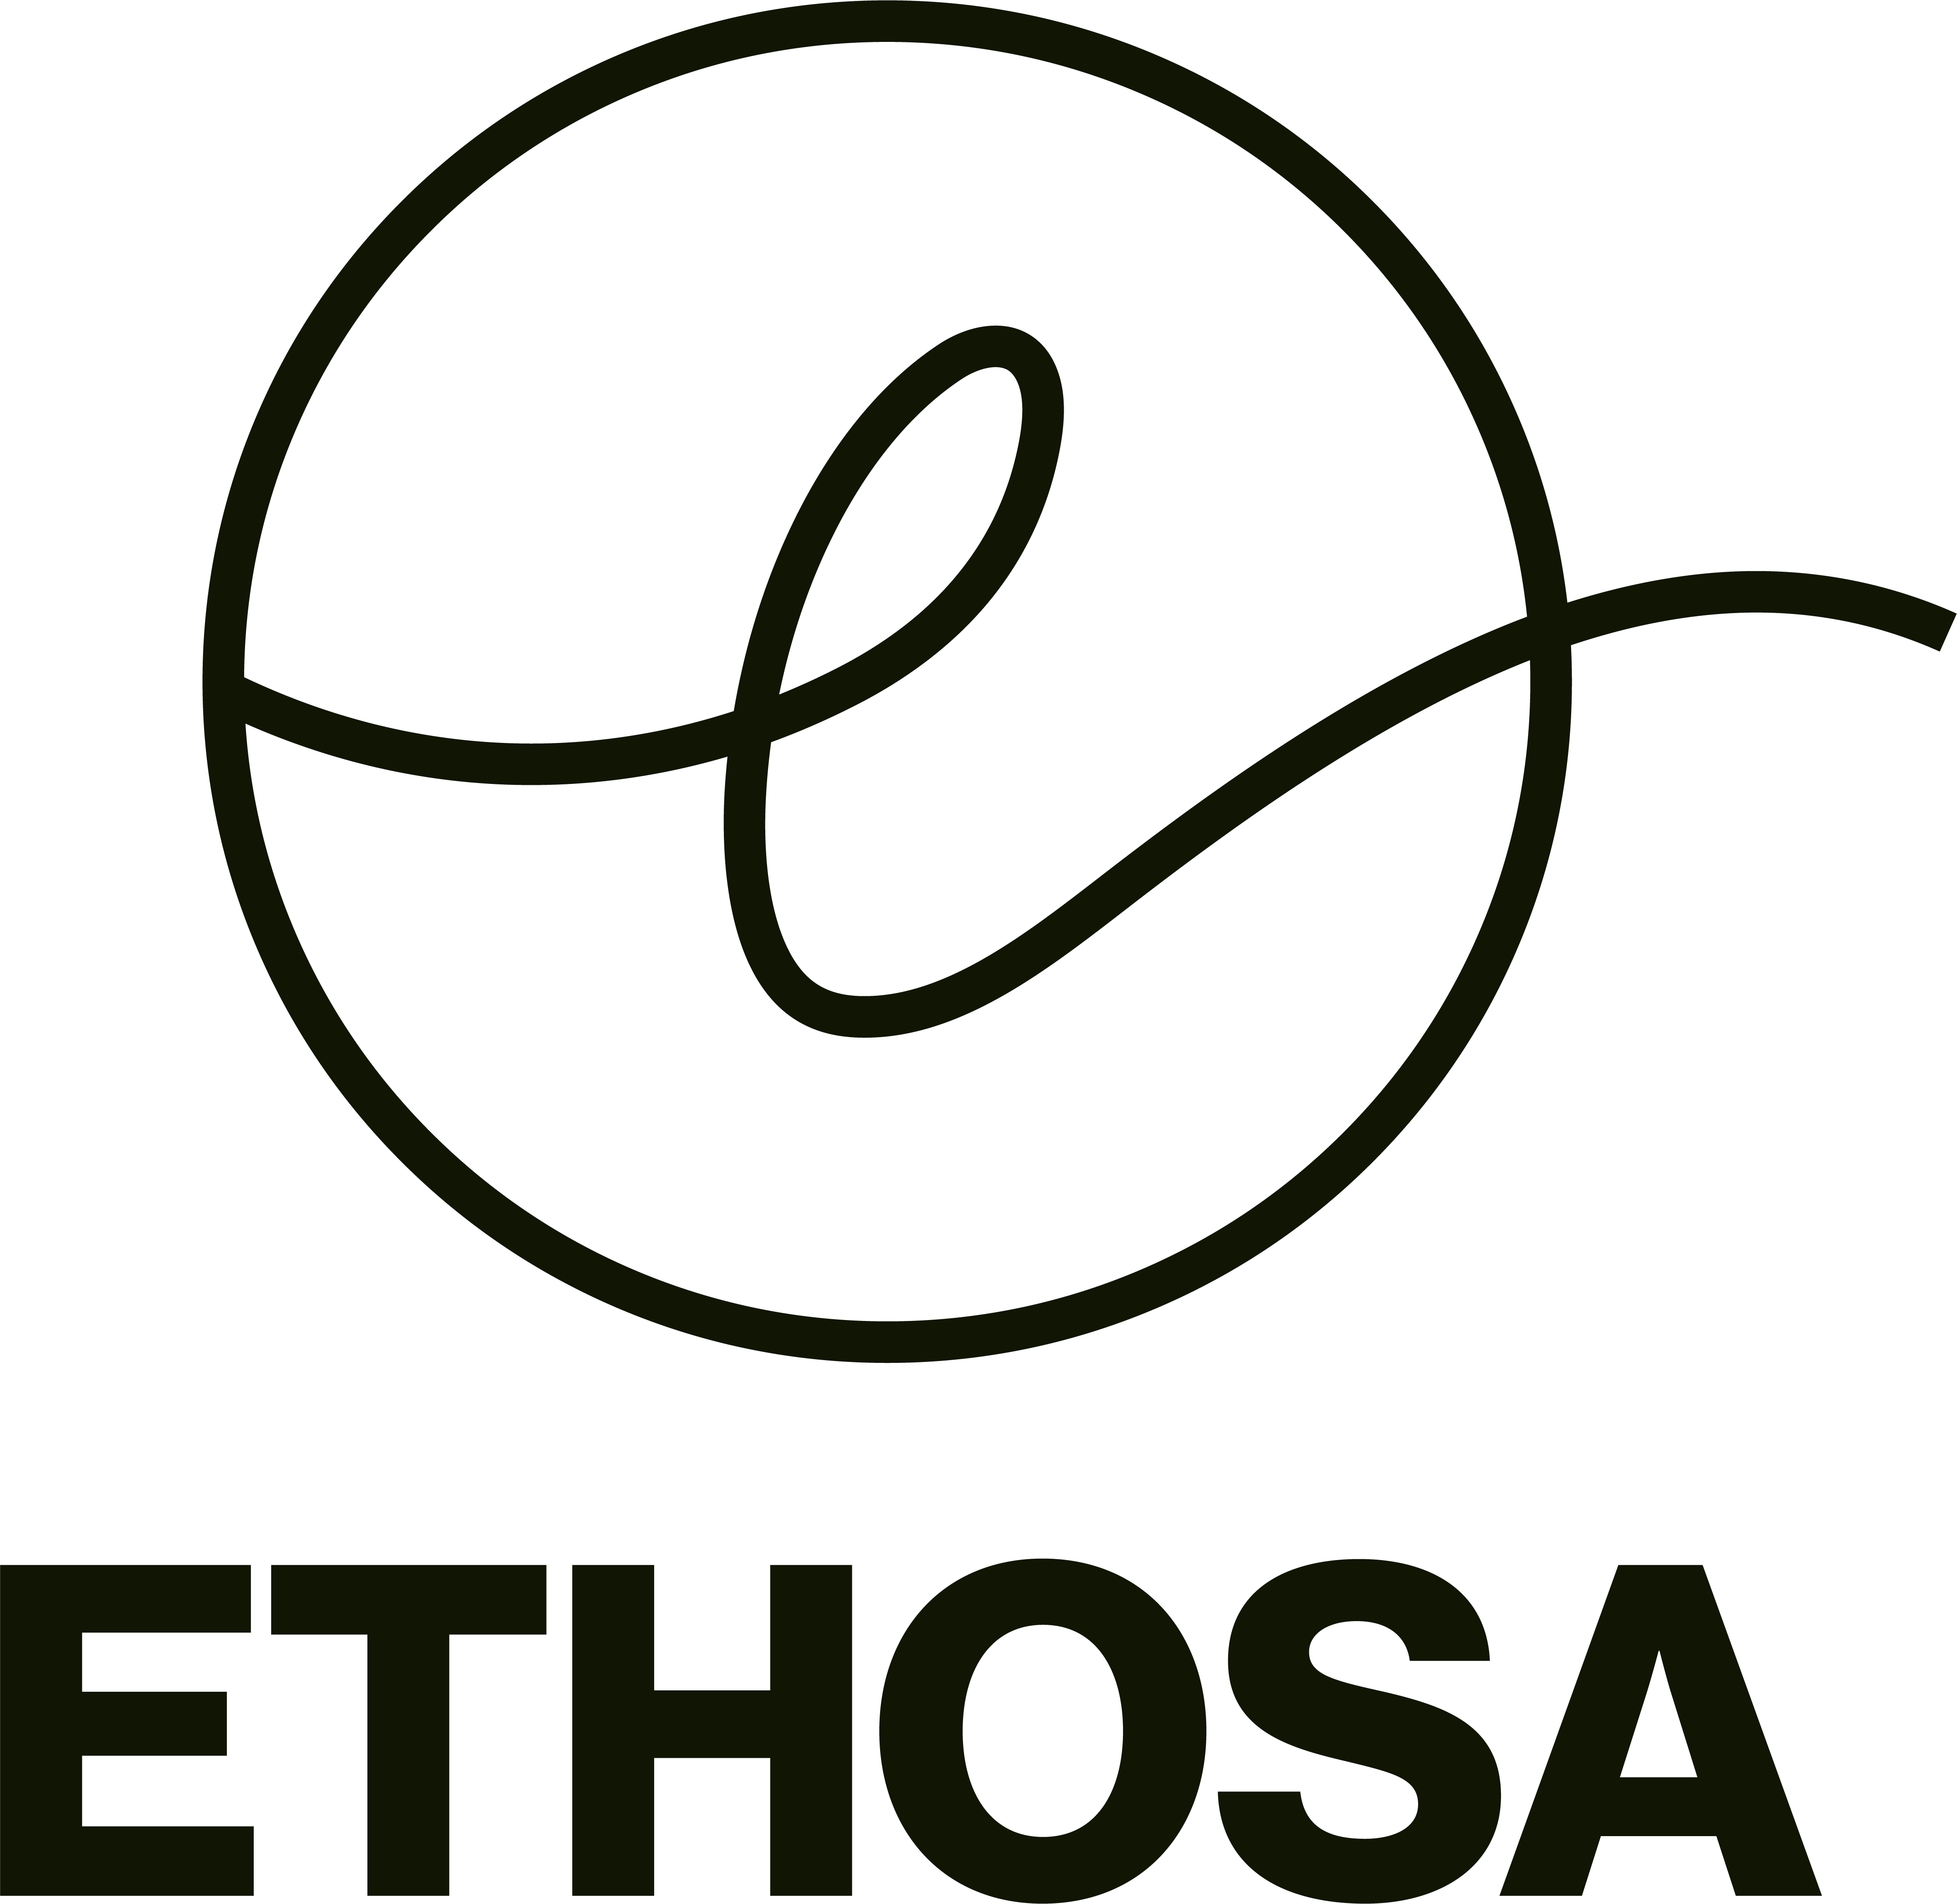 ETHOSA logo